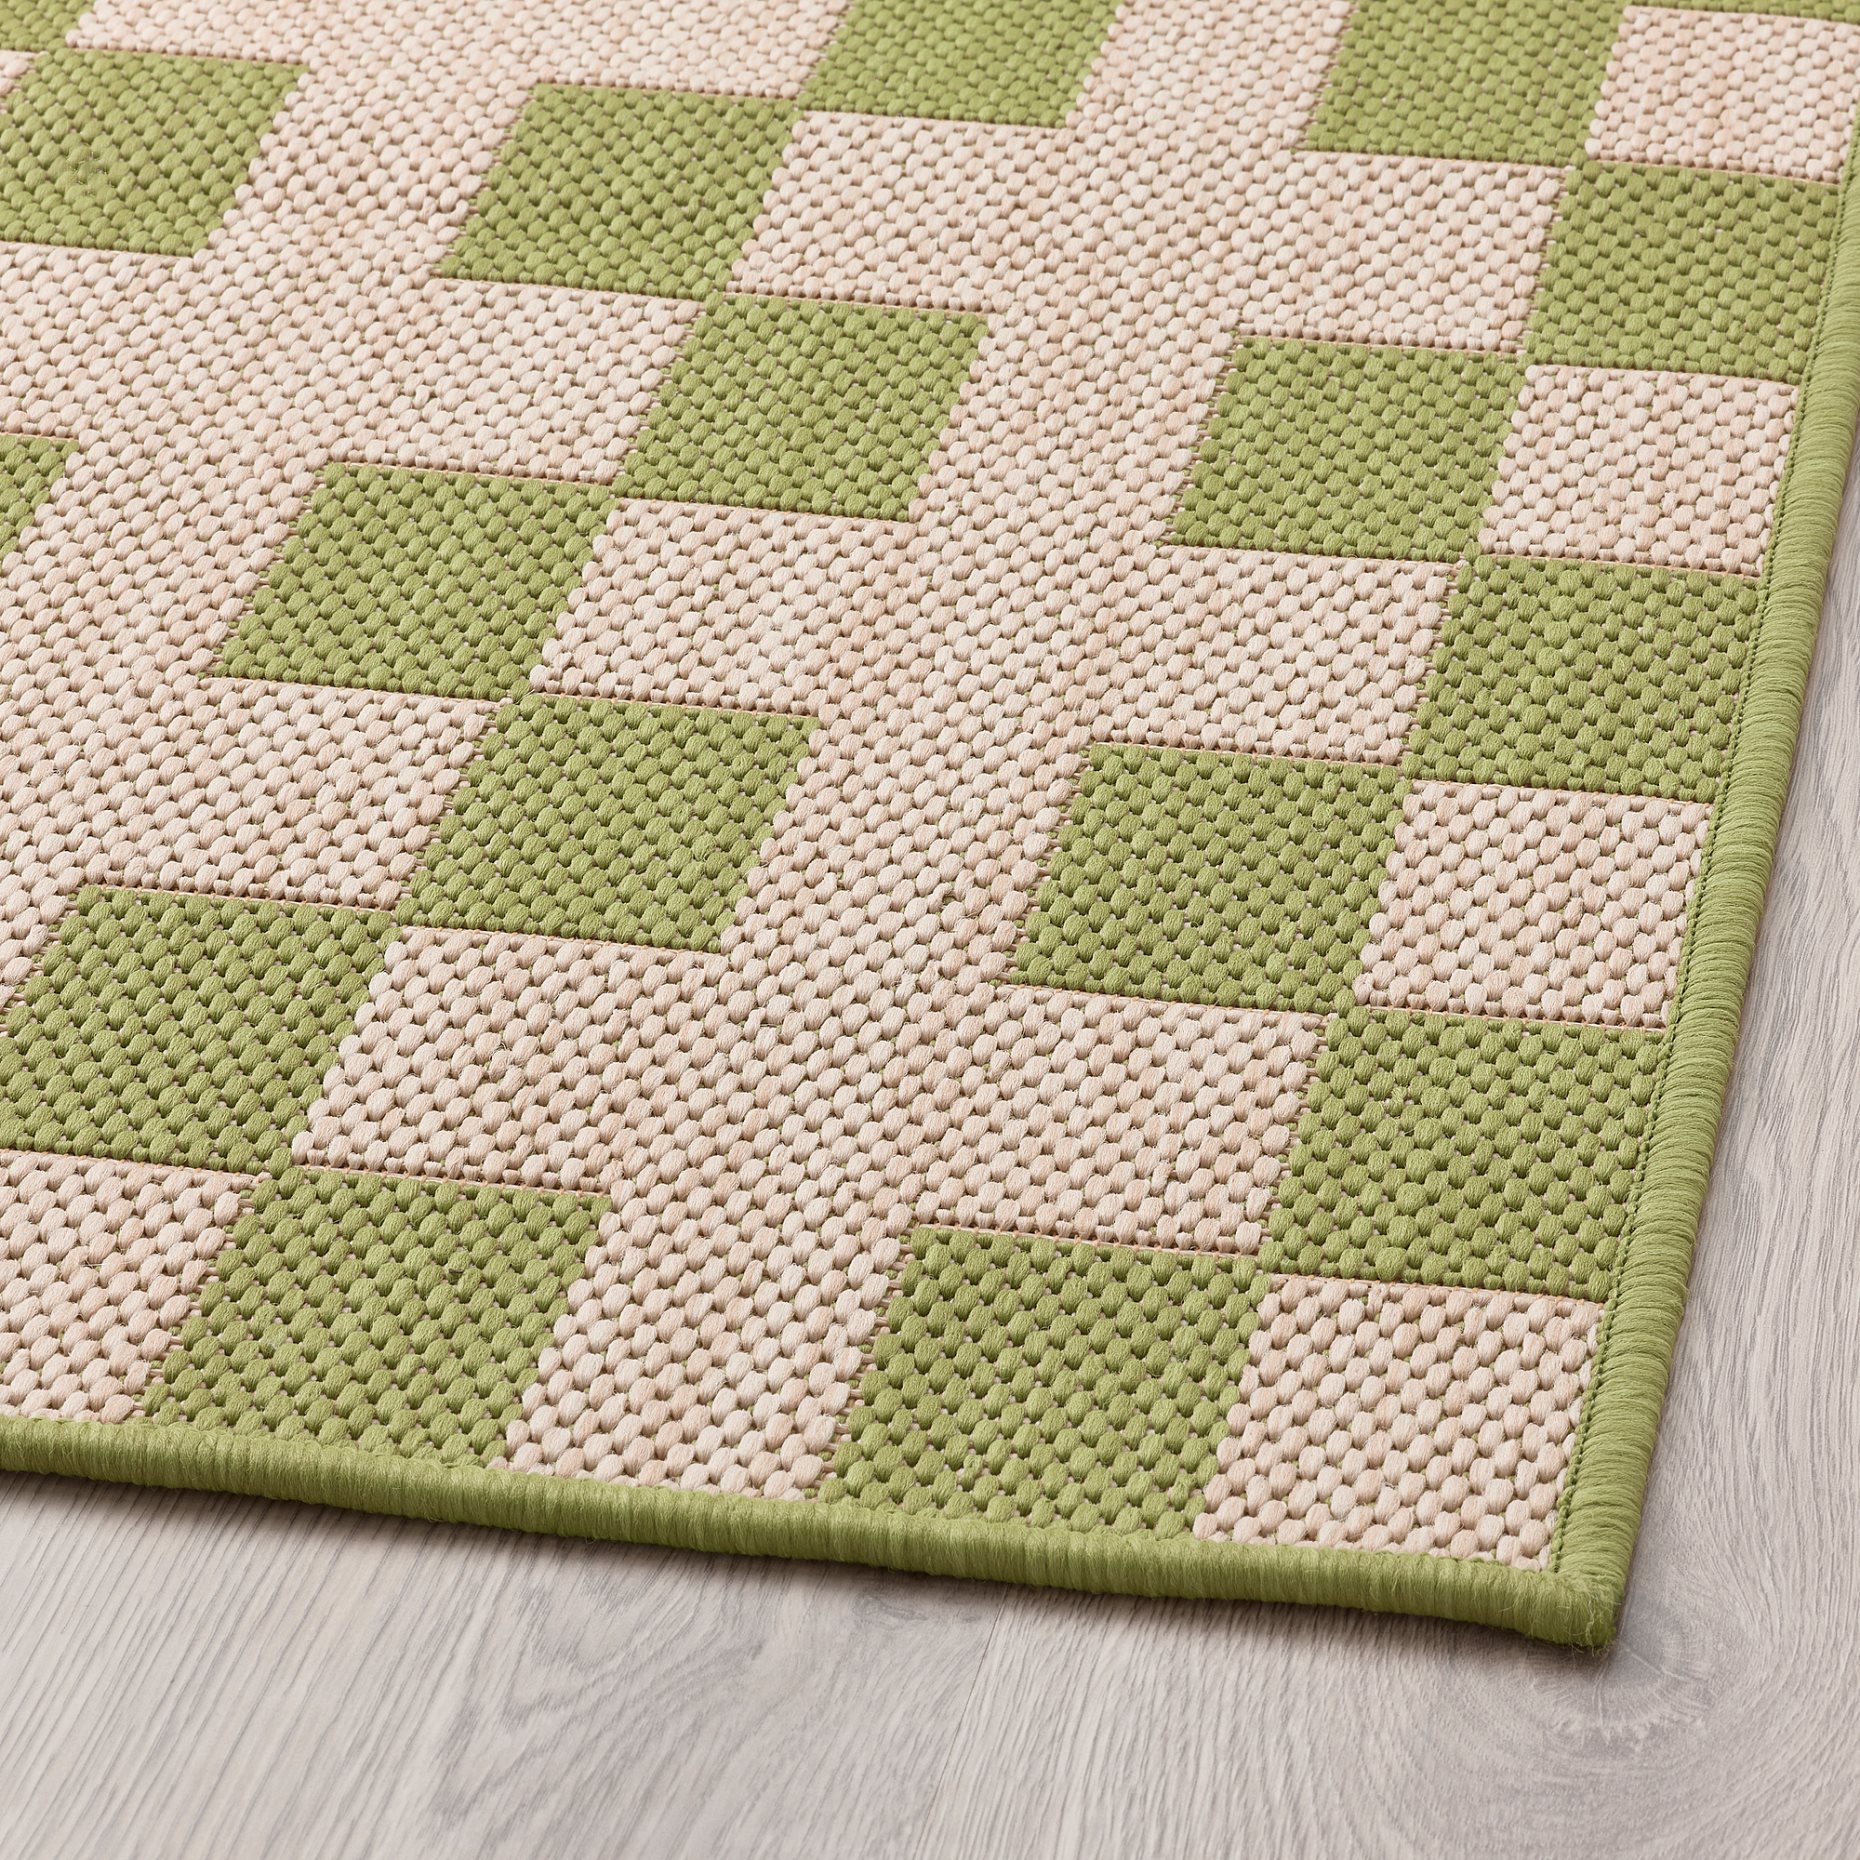 GANGSTIG, kitchen mat flatwoven, 45x120 cm, 605.781.40